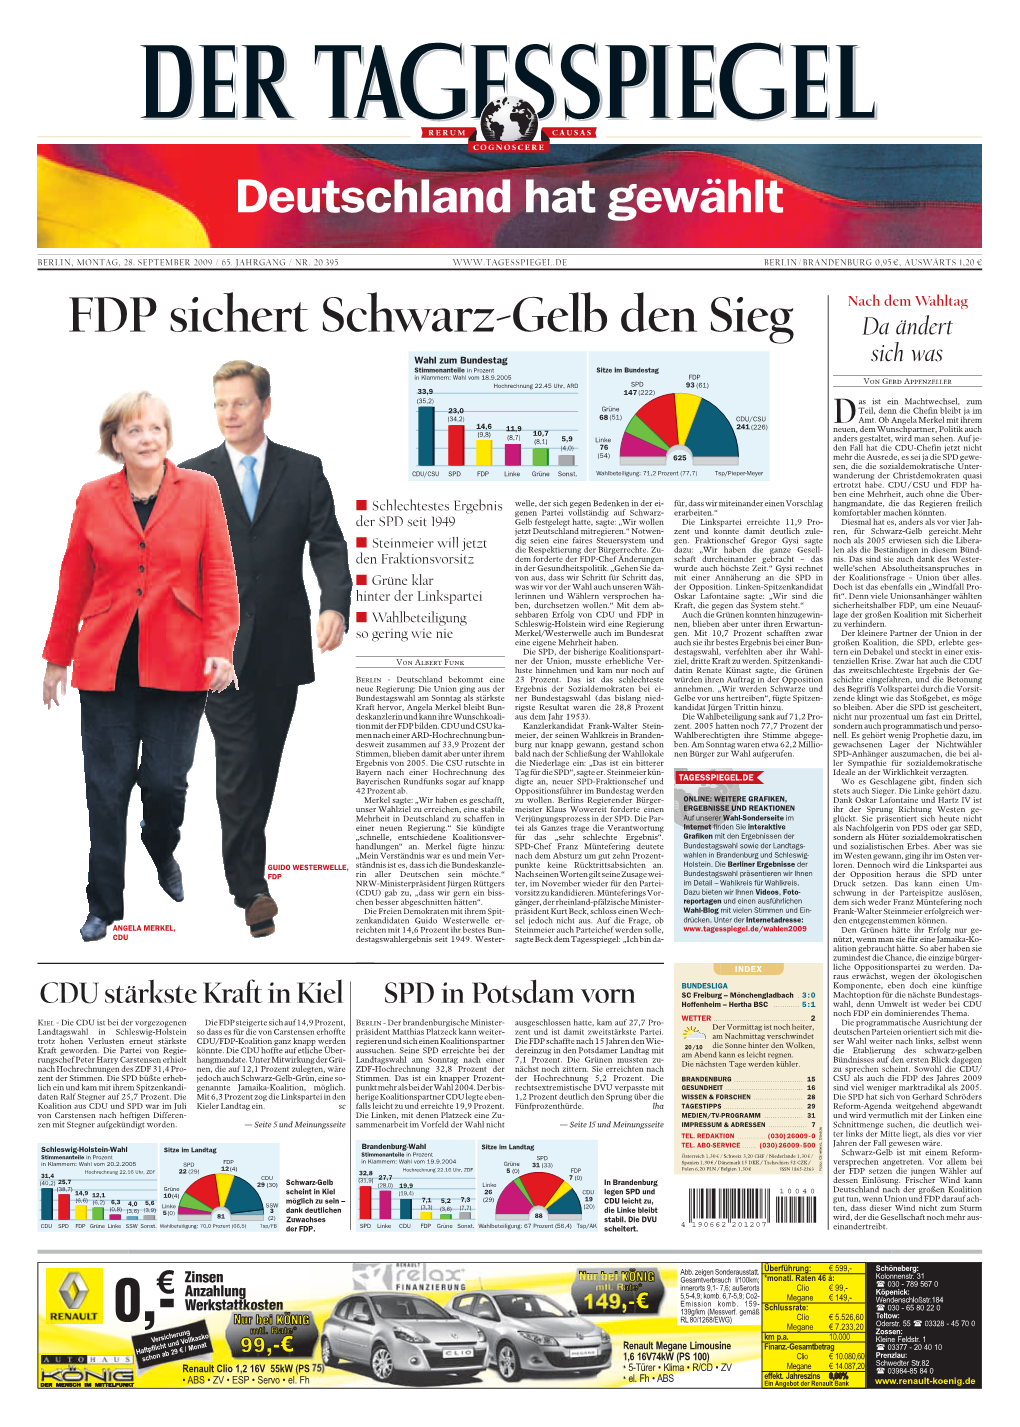 FDP Sichert Schwarz-Gelb Den Sieg Da Ändert Sich Was